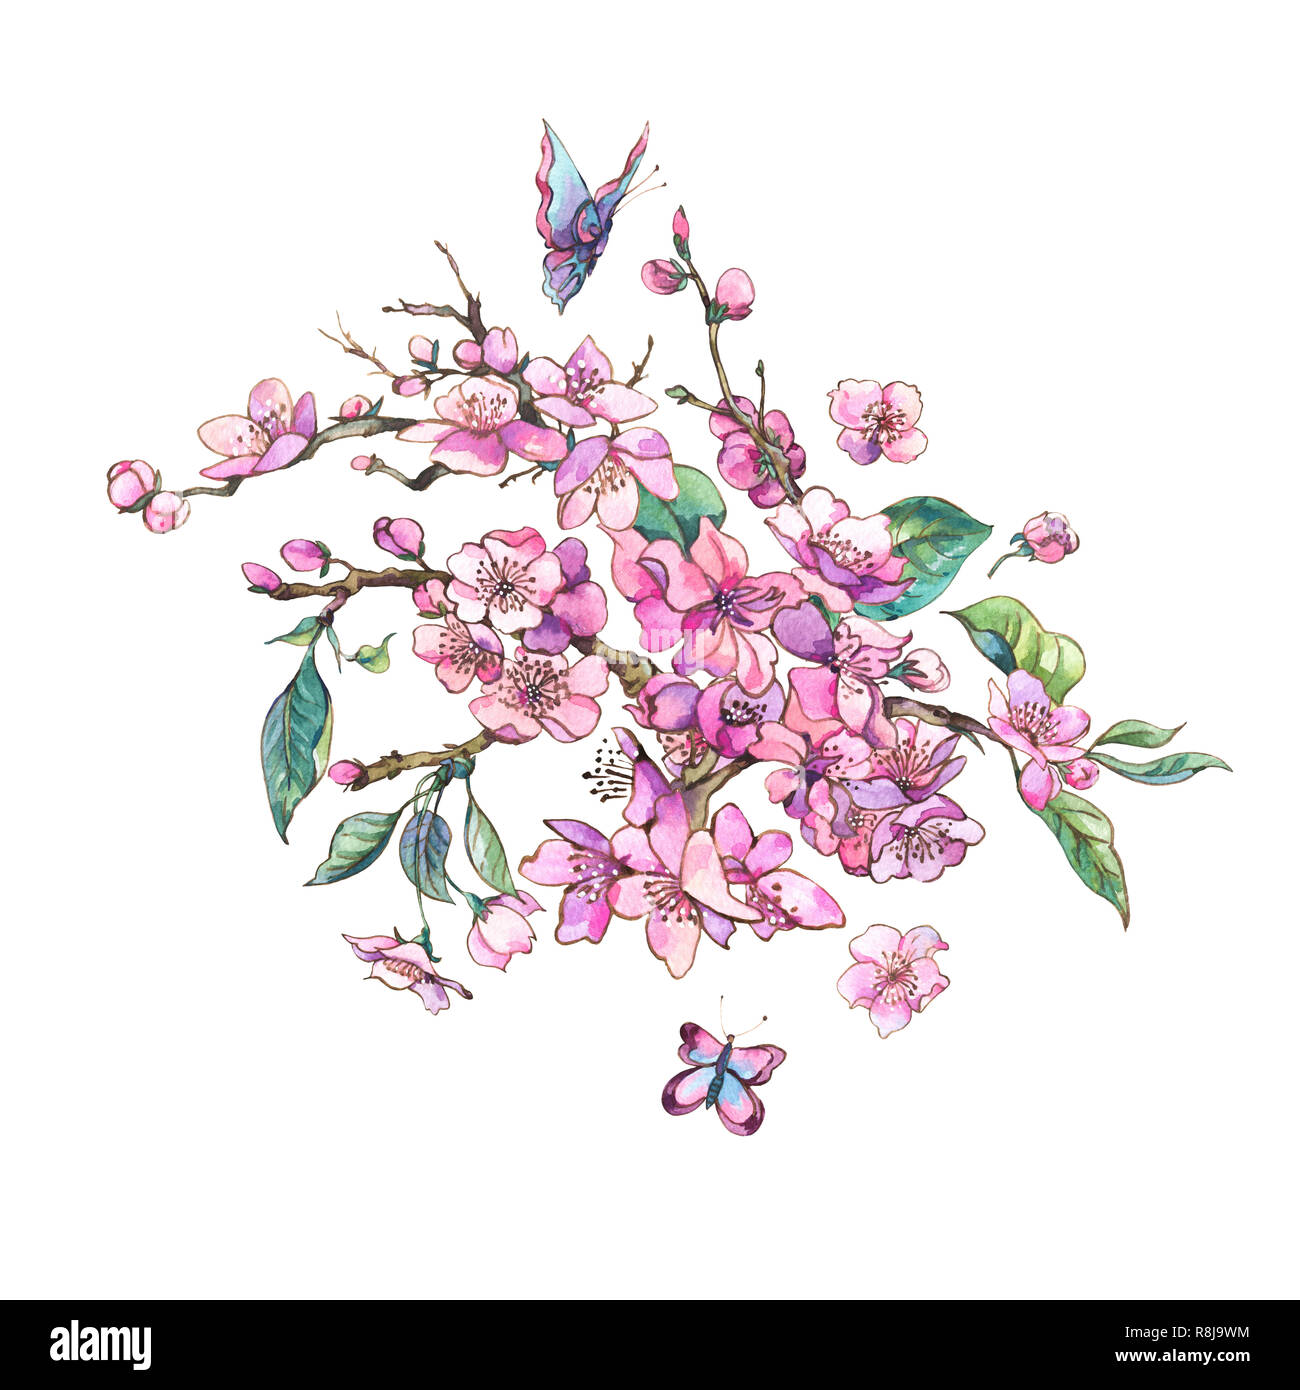 Printemps aquarelle carte de vœux, vintage bouquet floral avec branches en fleurs de cerisier rose pêche, poire, sakura, pommiers et de papillons, de fleurs Banque D'Images